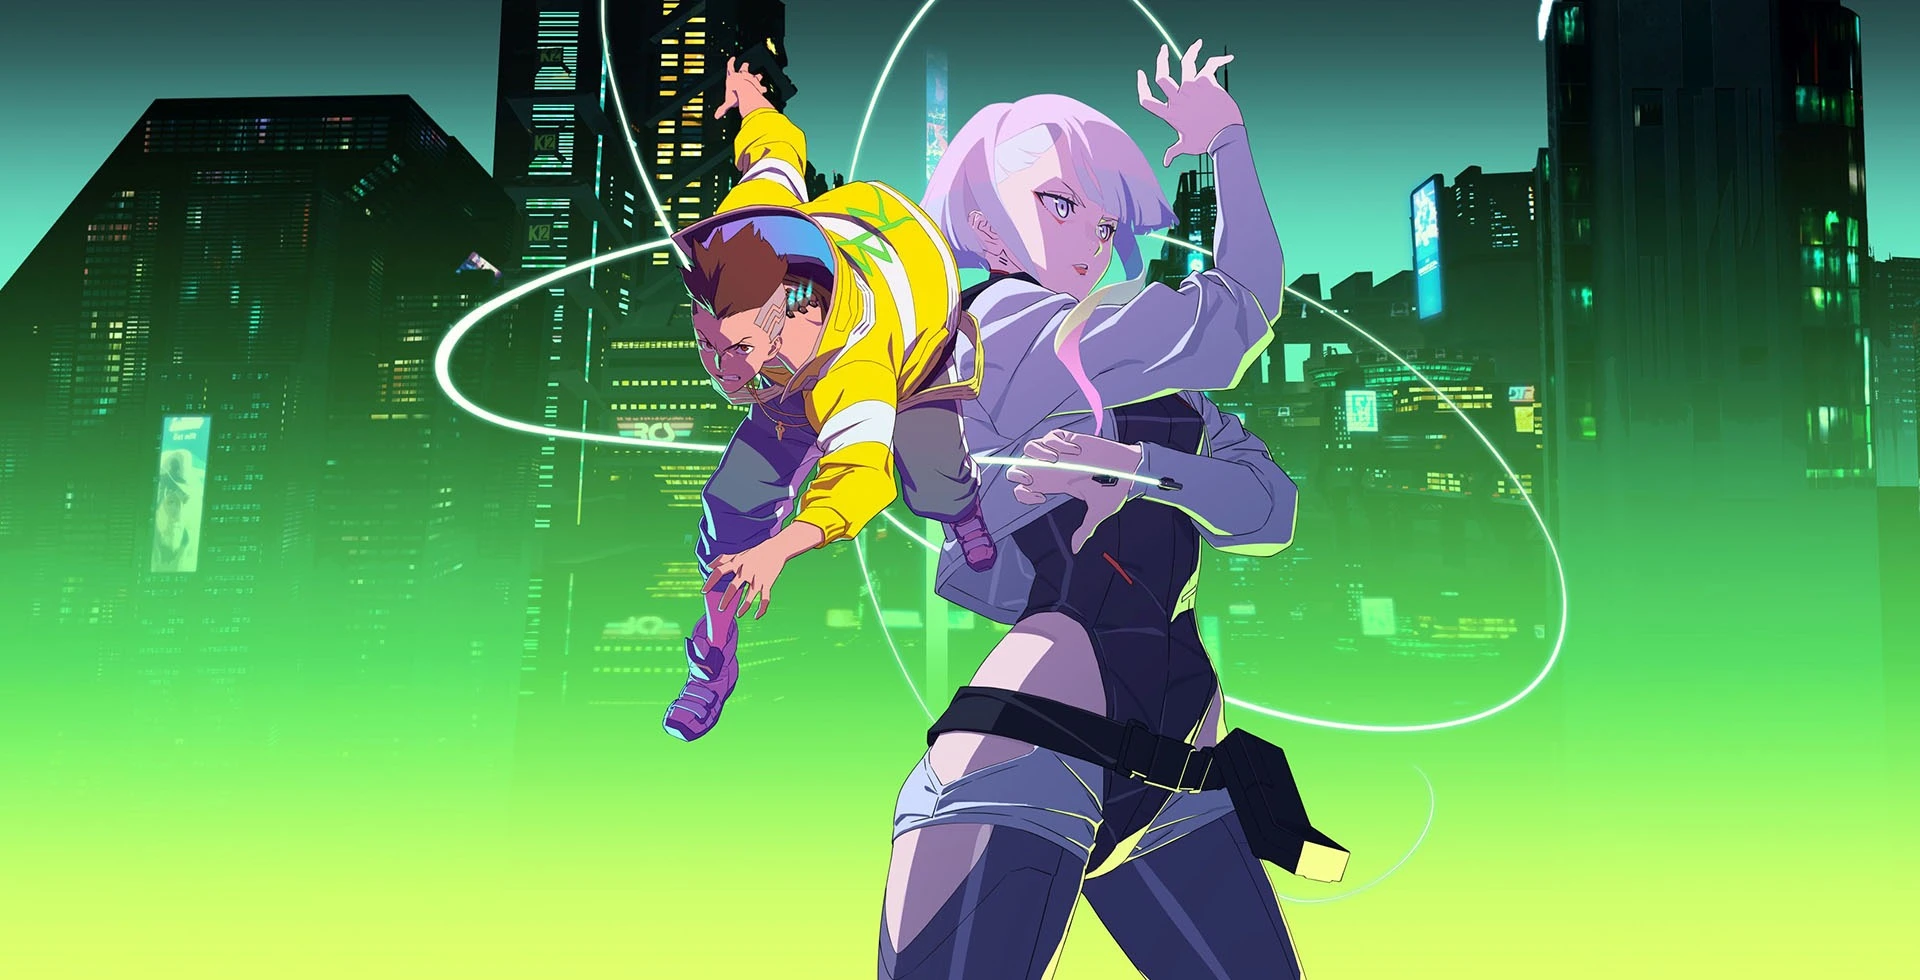 Melhores animes Netflix: conheça 15 animações incríveis da plataforma